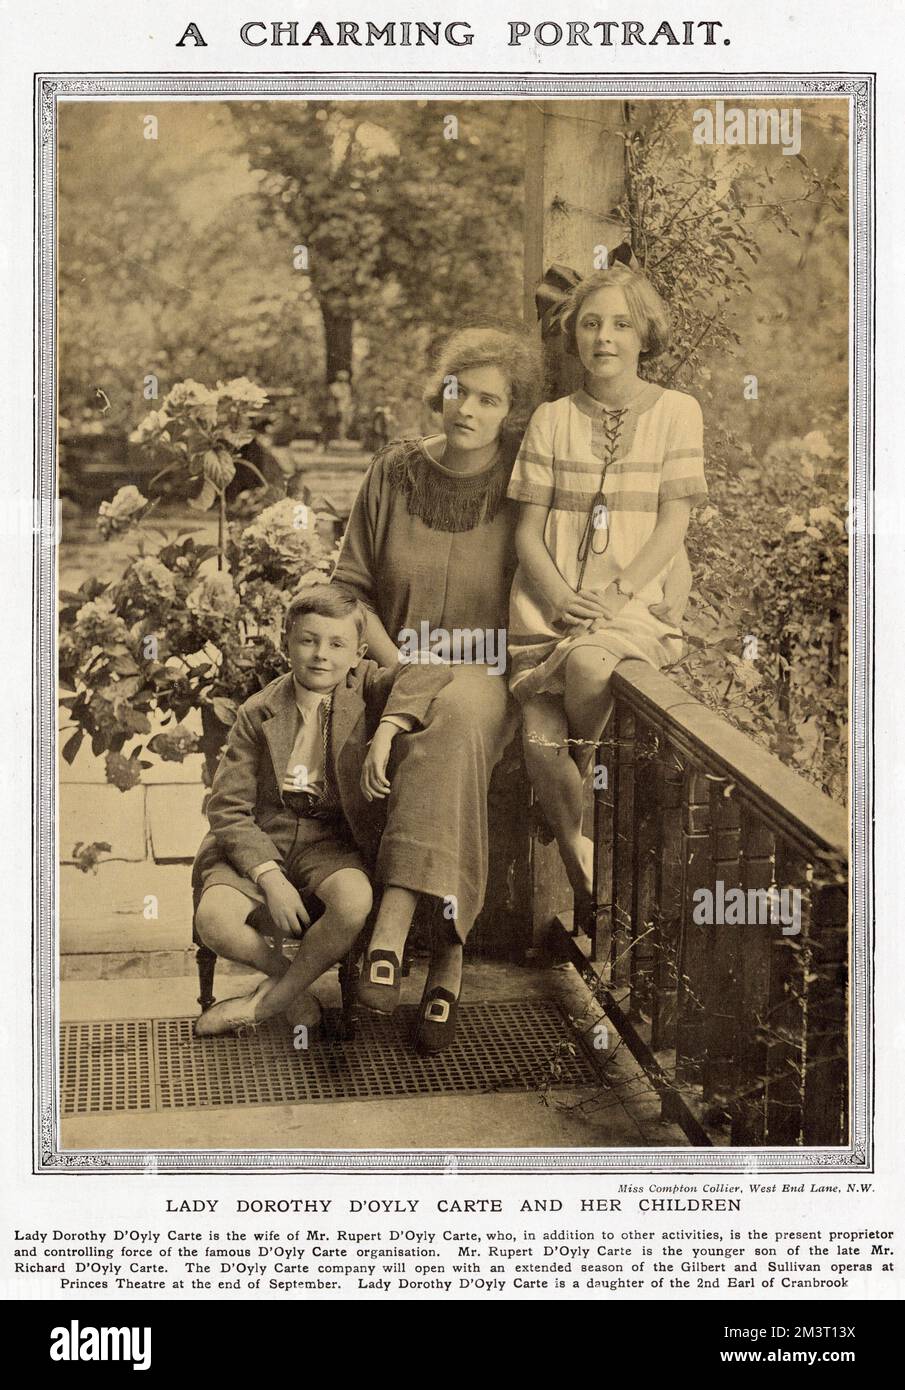 Mme Dorothy d'Oyly carte, fille du comte de Cranbrook de 2nd et épouse de Rupert d'Oyly carte, l'impresario derrière Gilbert et Sullivan et l'hôtel Savoy, photographié avec ses deux enfants, Bridget et Michael. Michael a été tragiquement tué dans un accident de voiture en Suisse en 1932, âgé de 21 ans. Banque D'Images